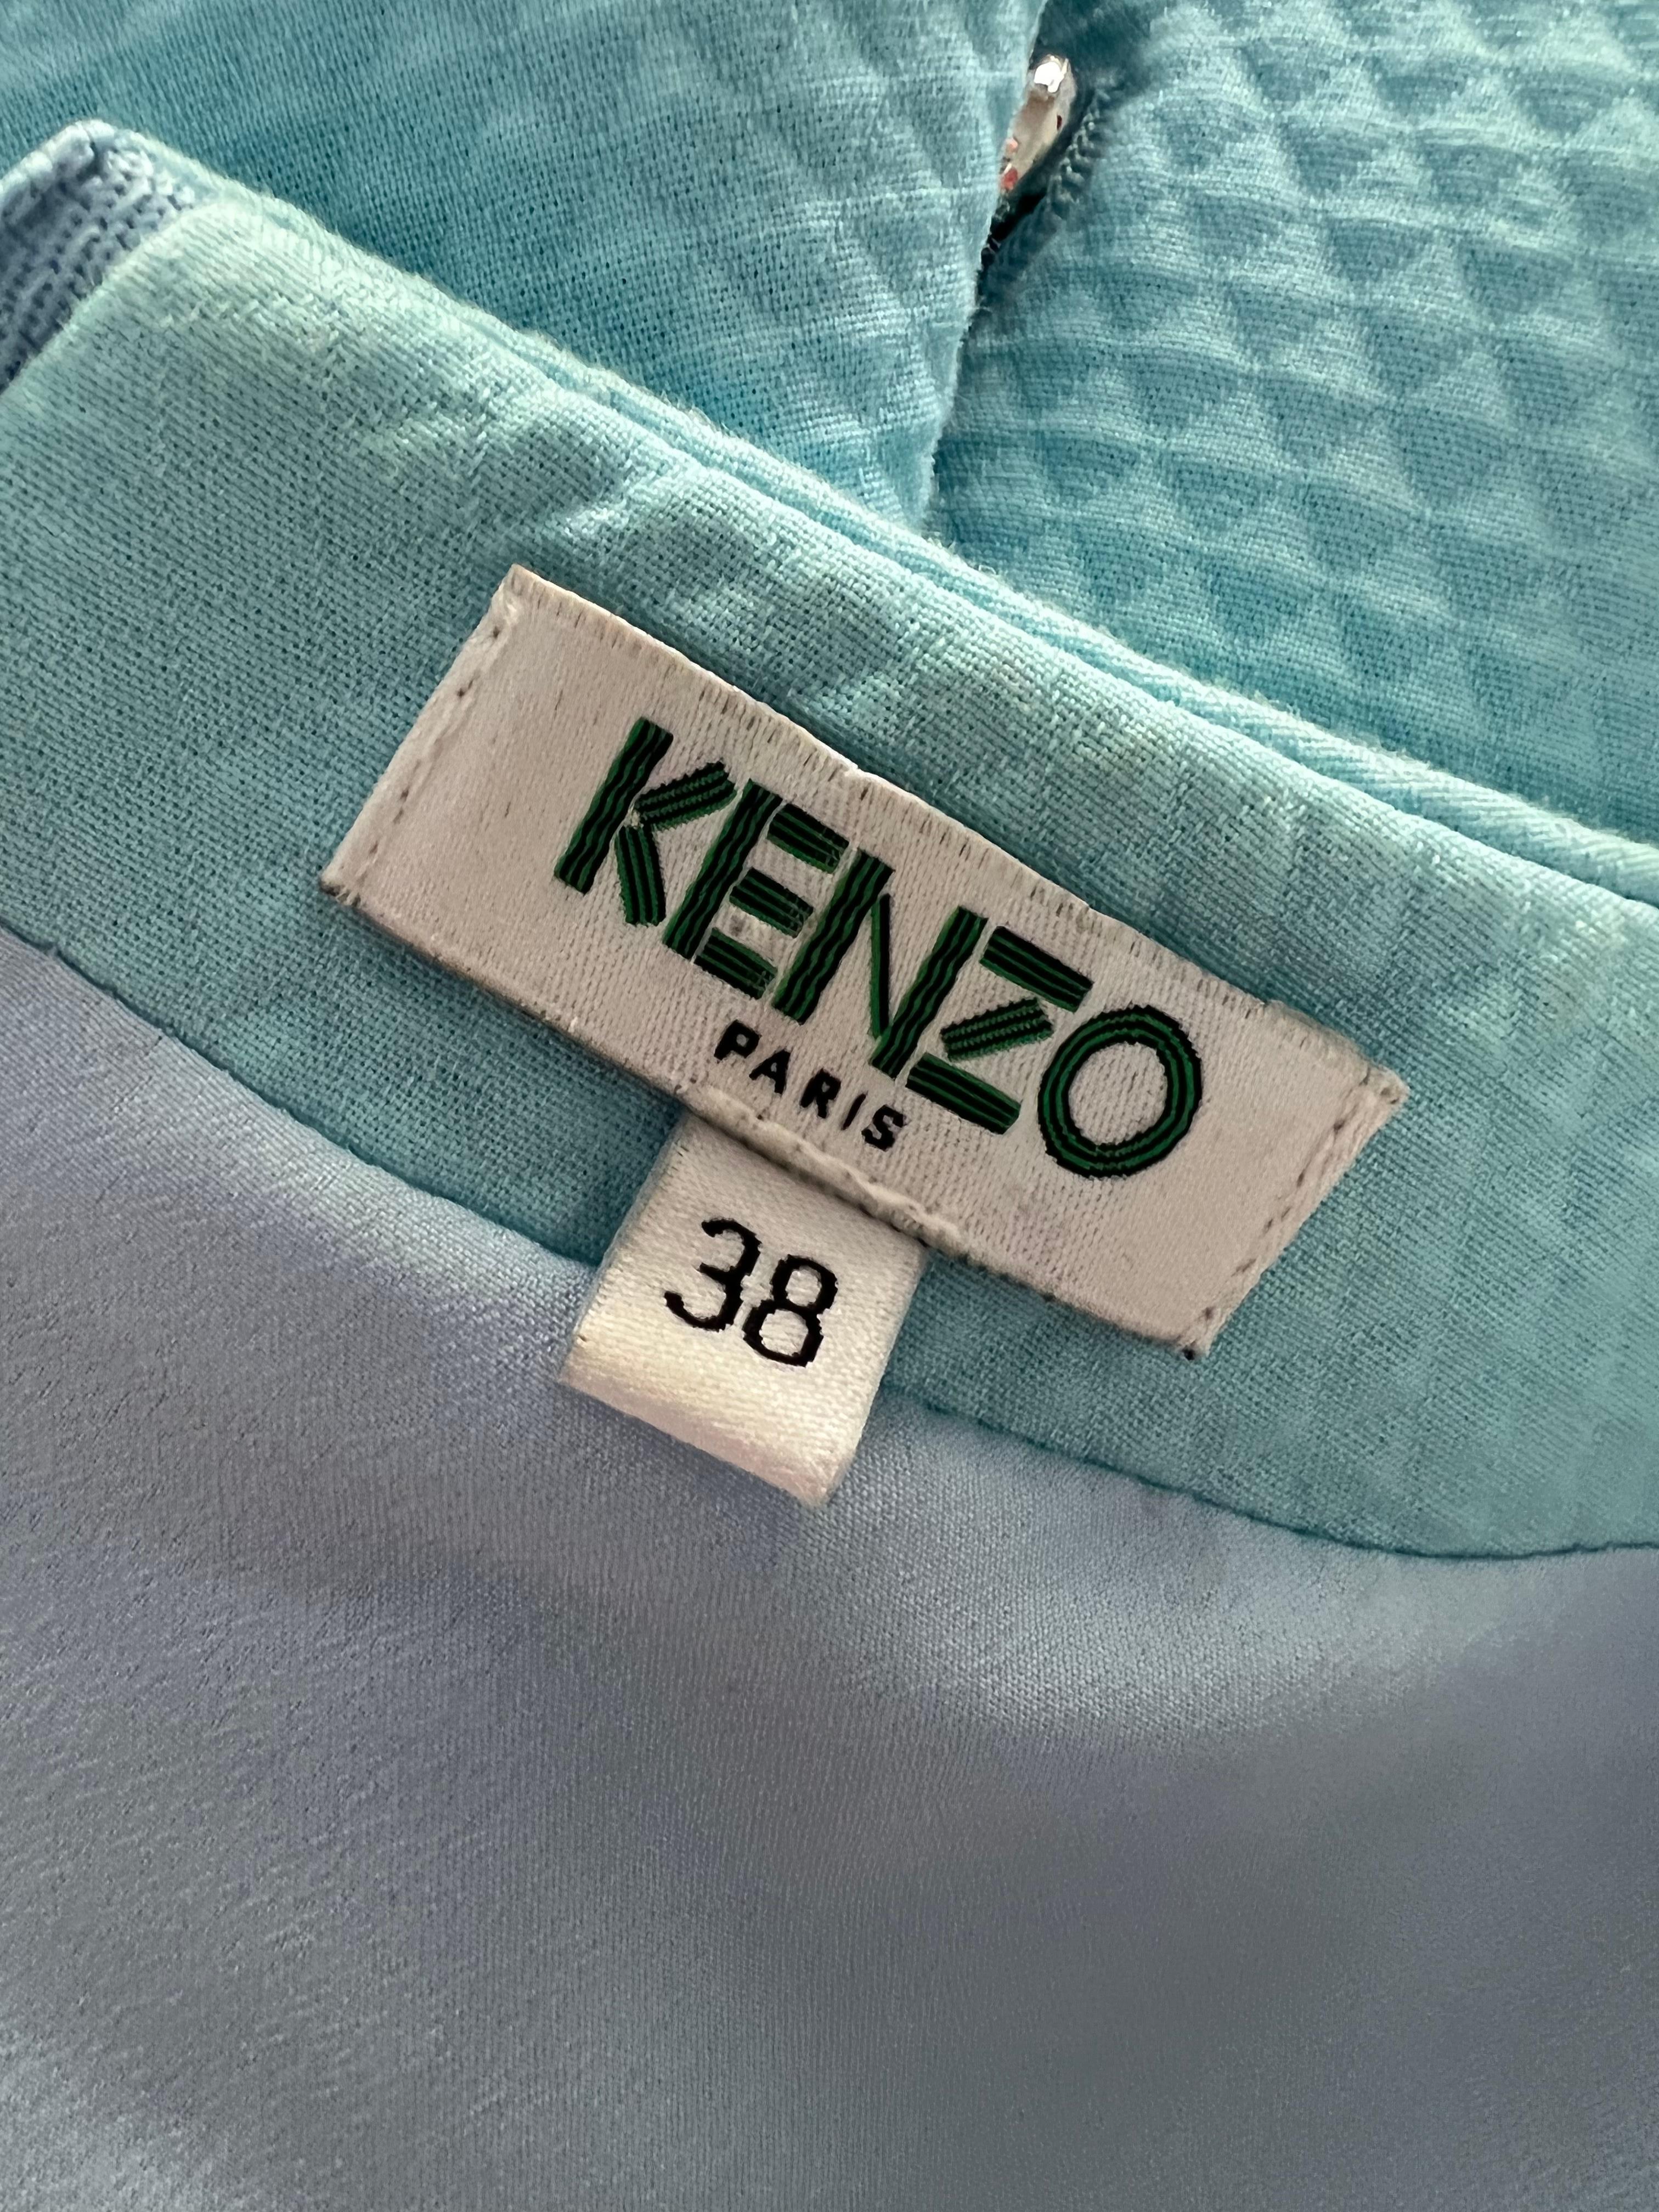 Kenzo Paris Baby Blue Cotton Mini Dress, Size 38 For Sale 4